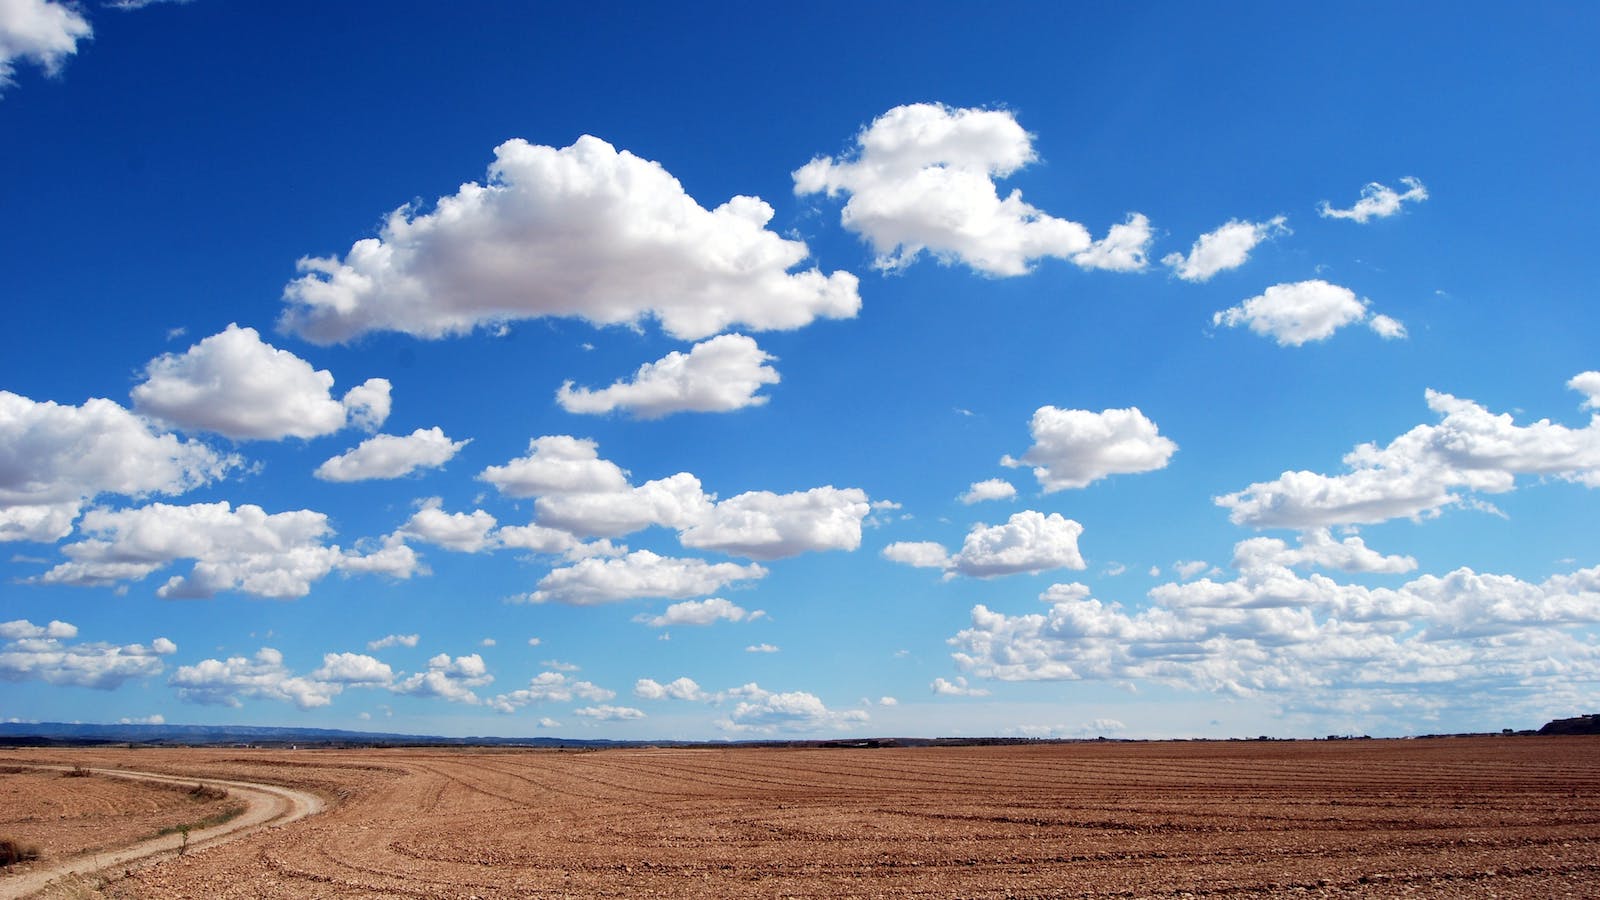 Clouds above a field